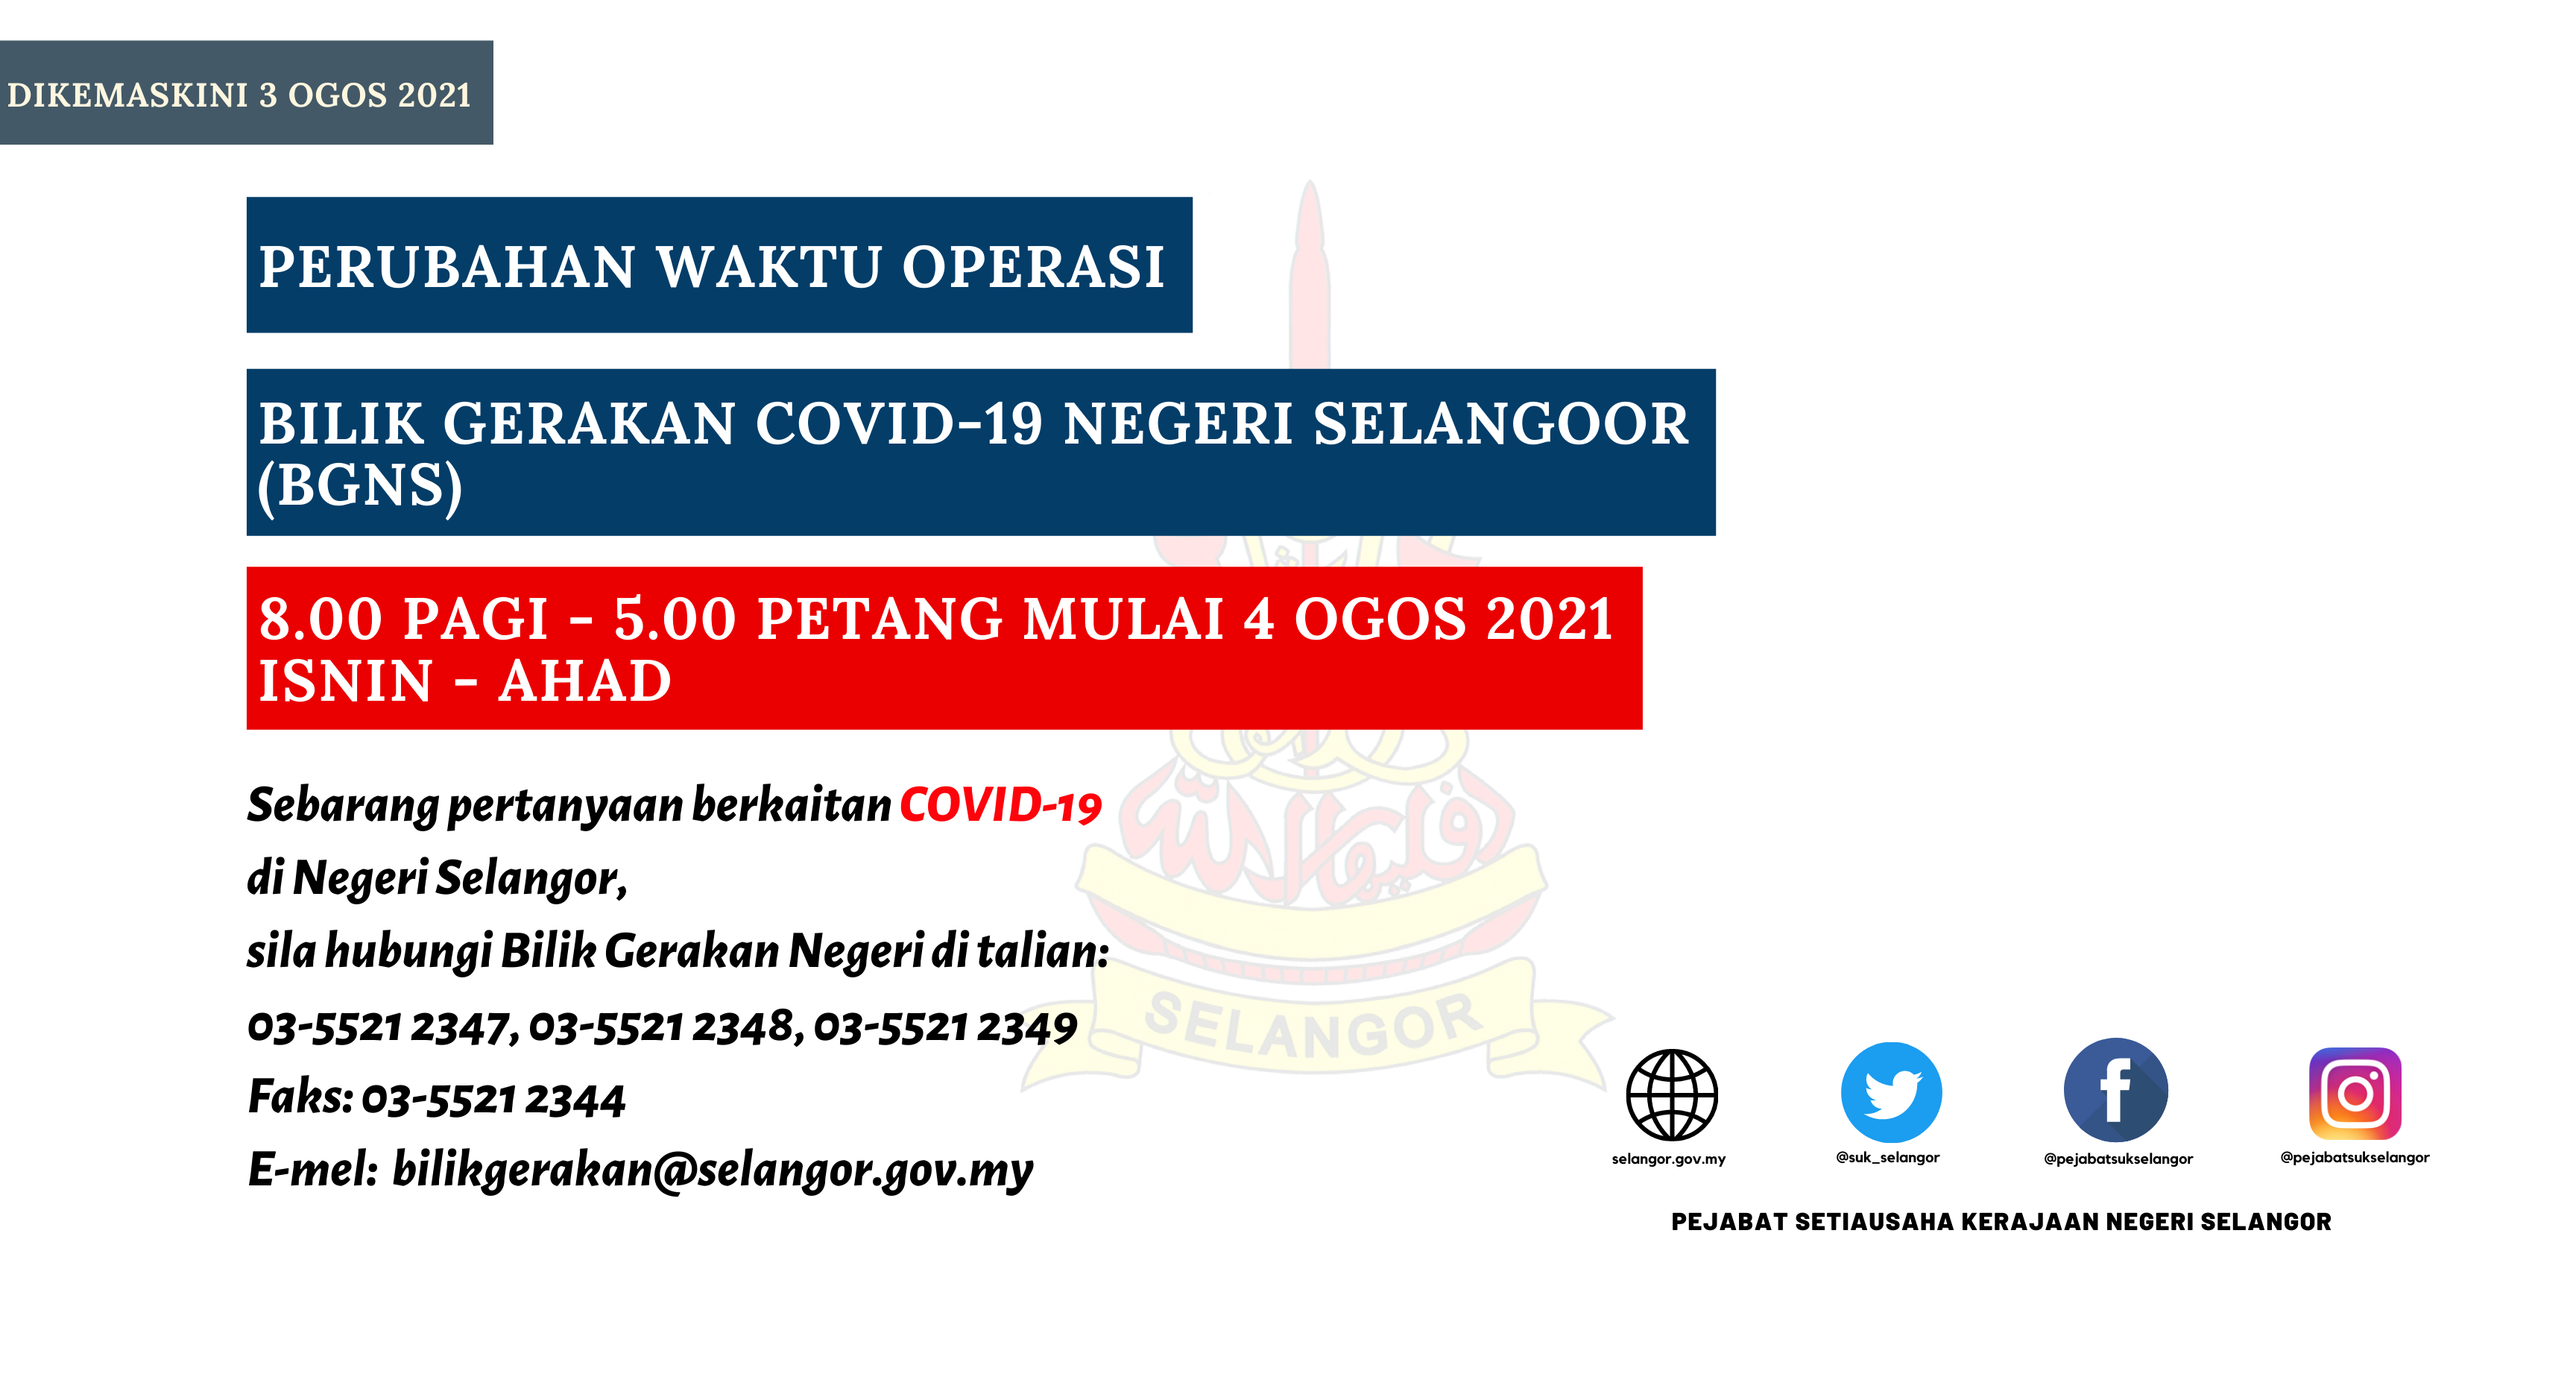 Pengumuman Bilik Gerakan Covid-19 Negeri Selangor Ogos 2021